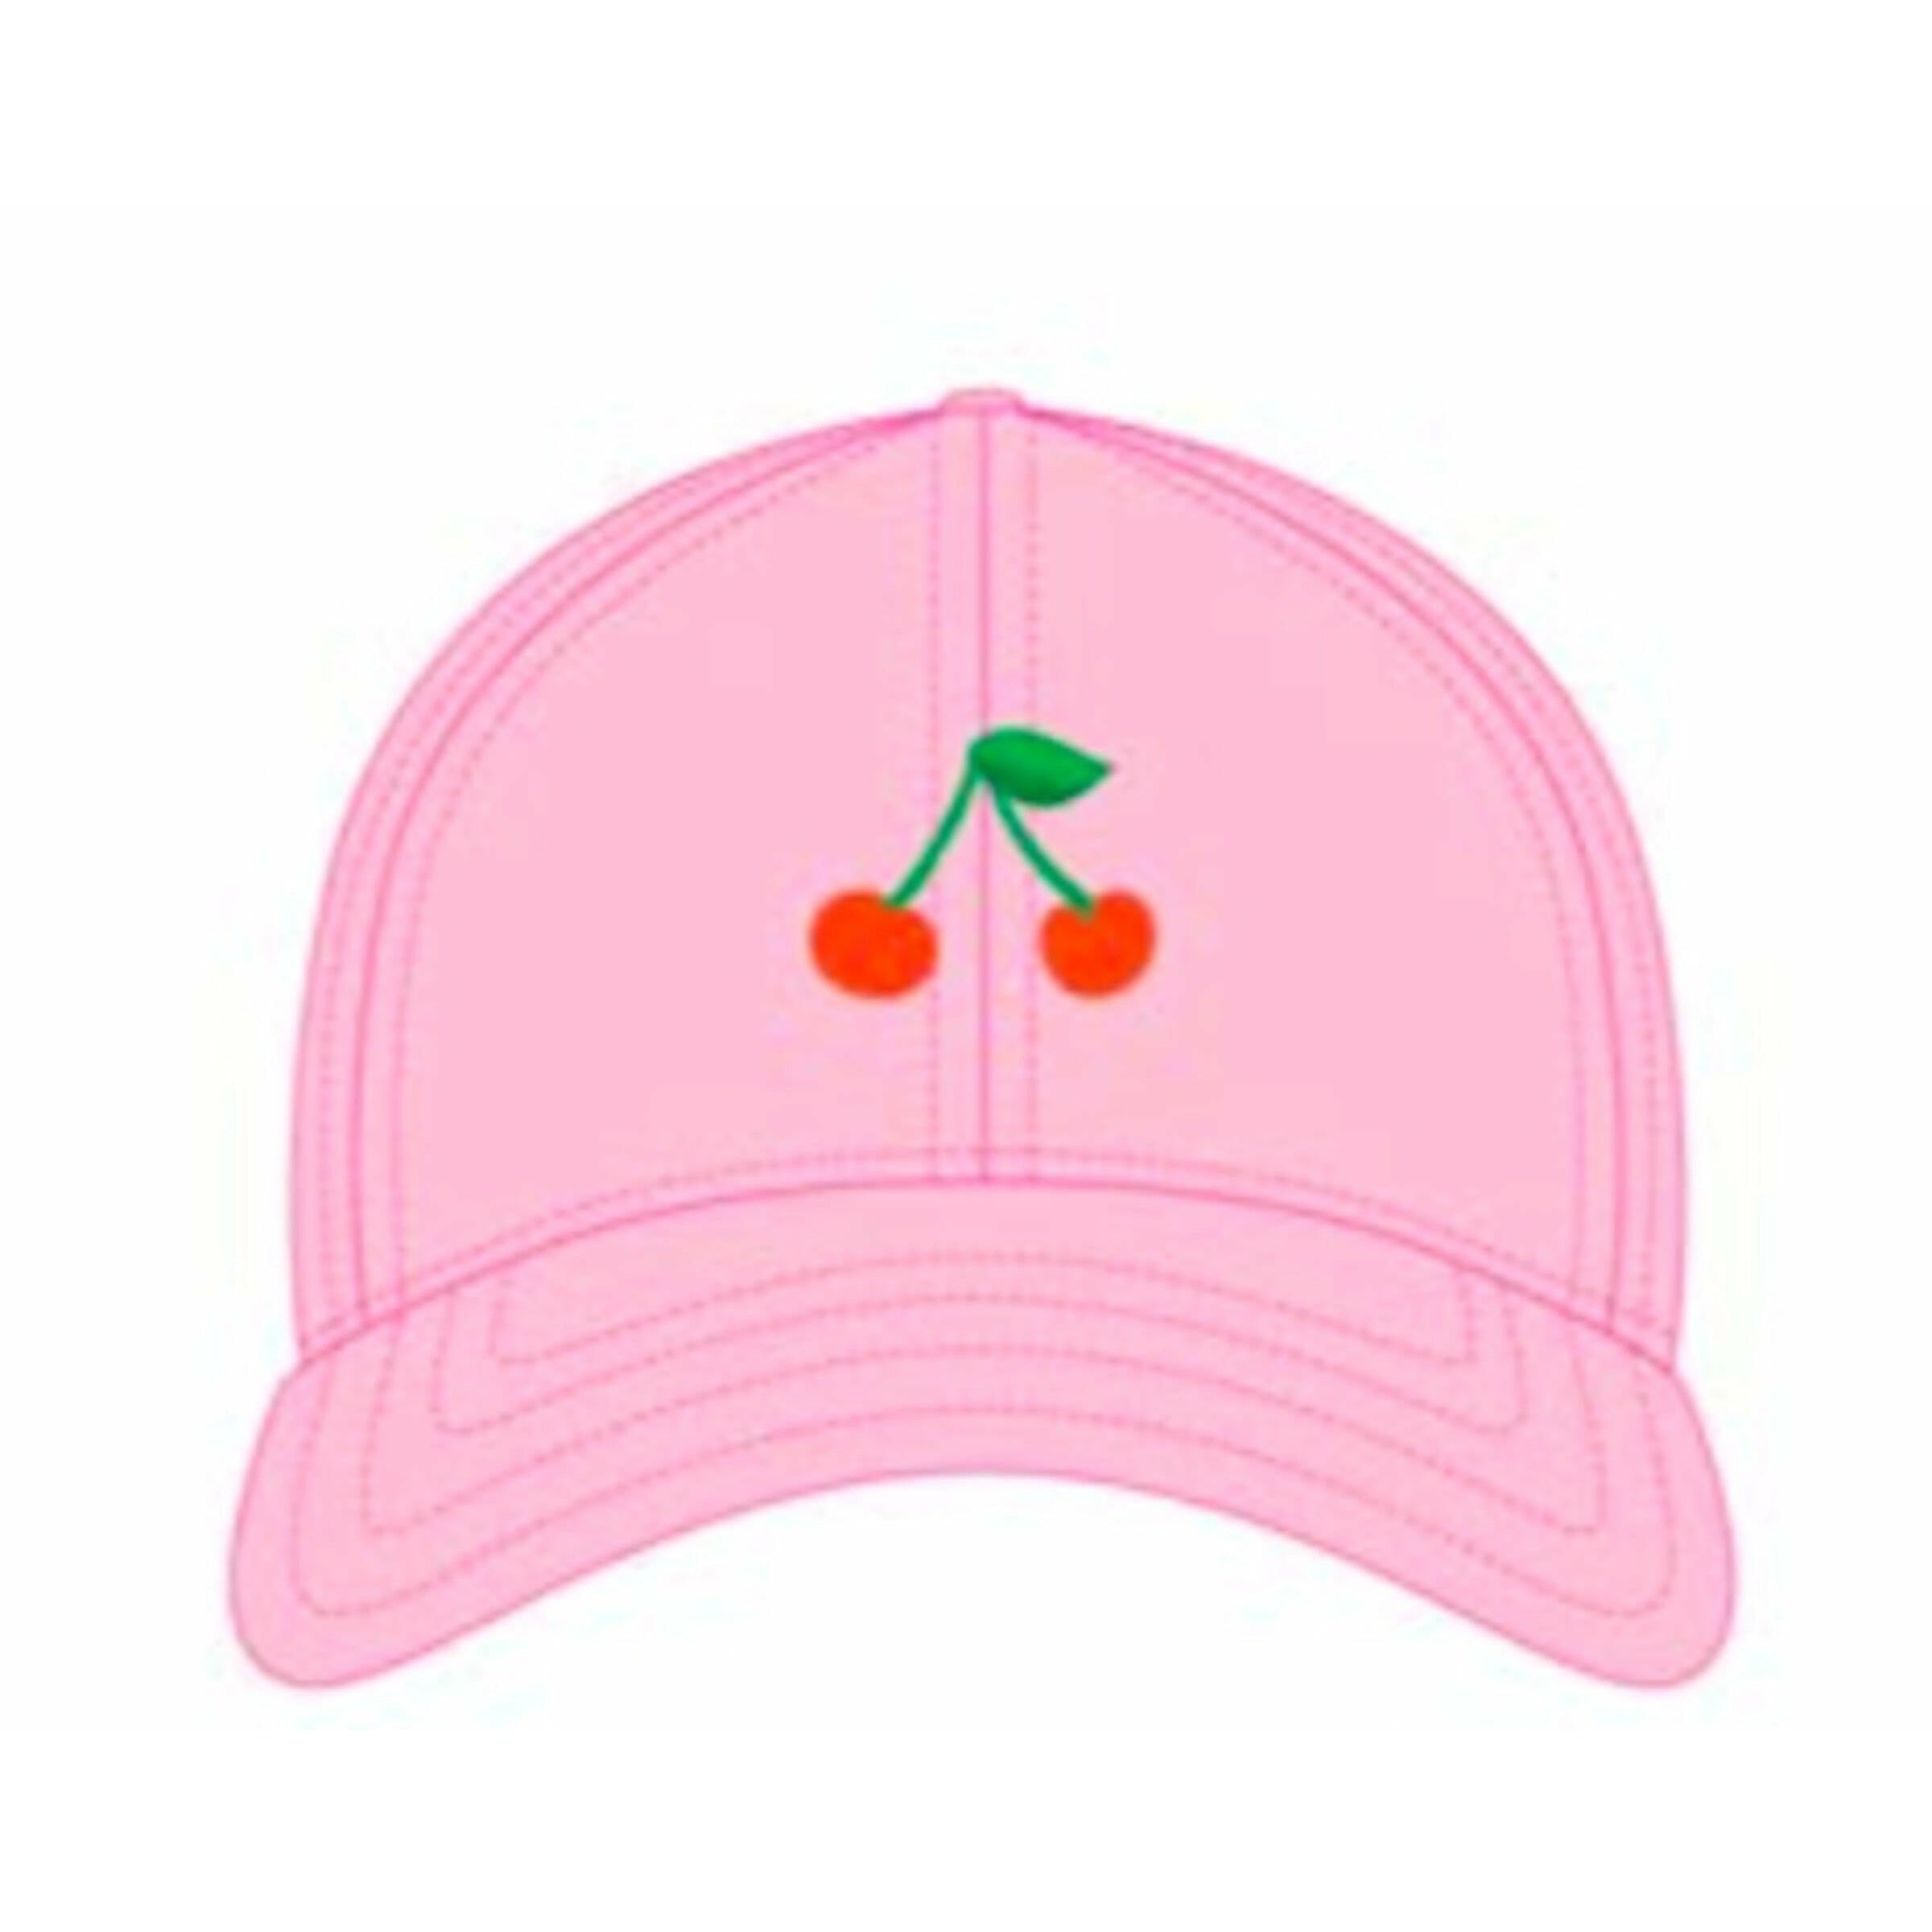 Baseball Hat - Cherries on Light Pink